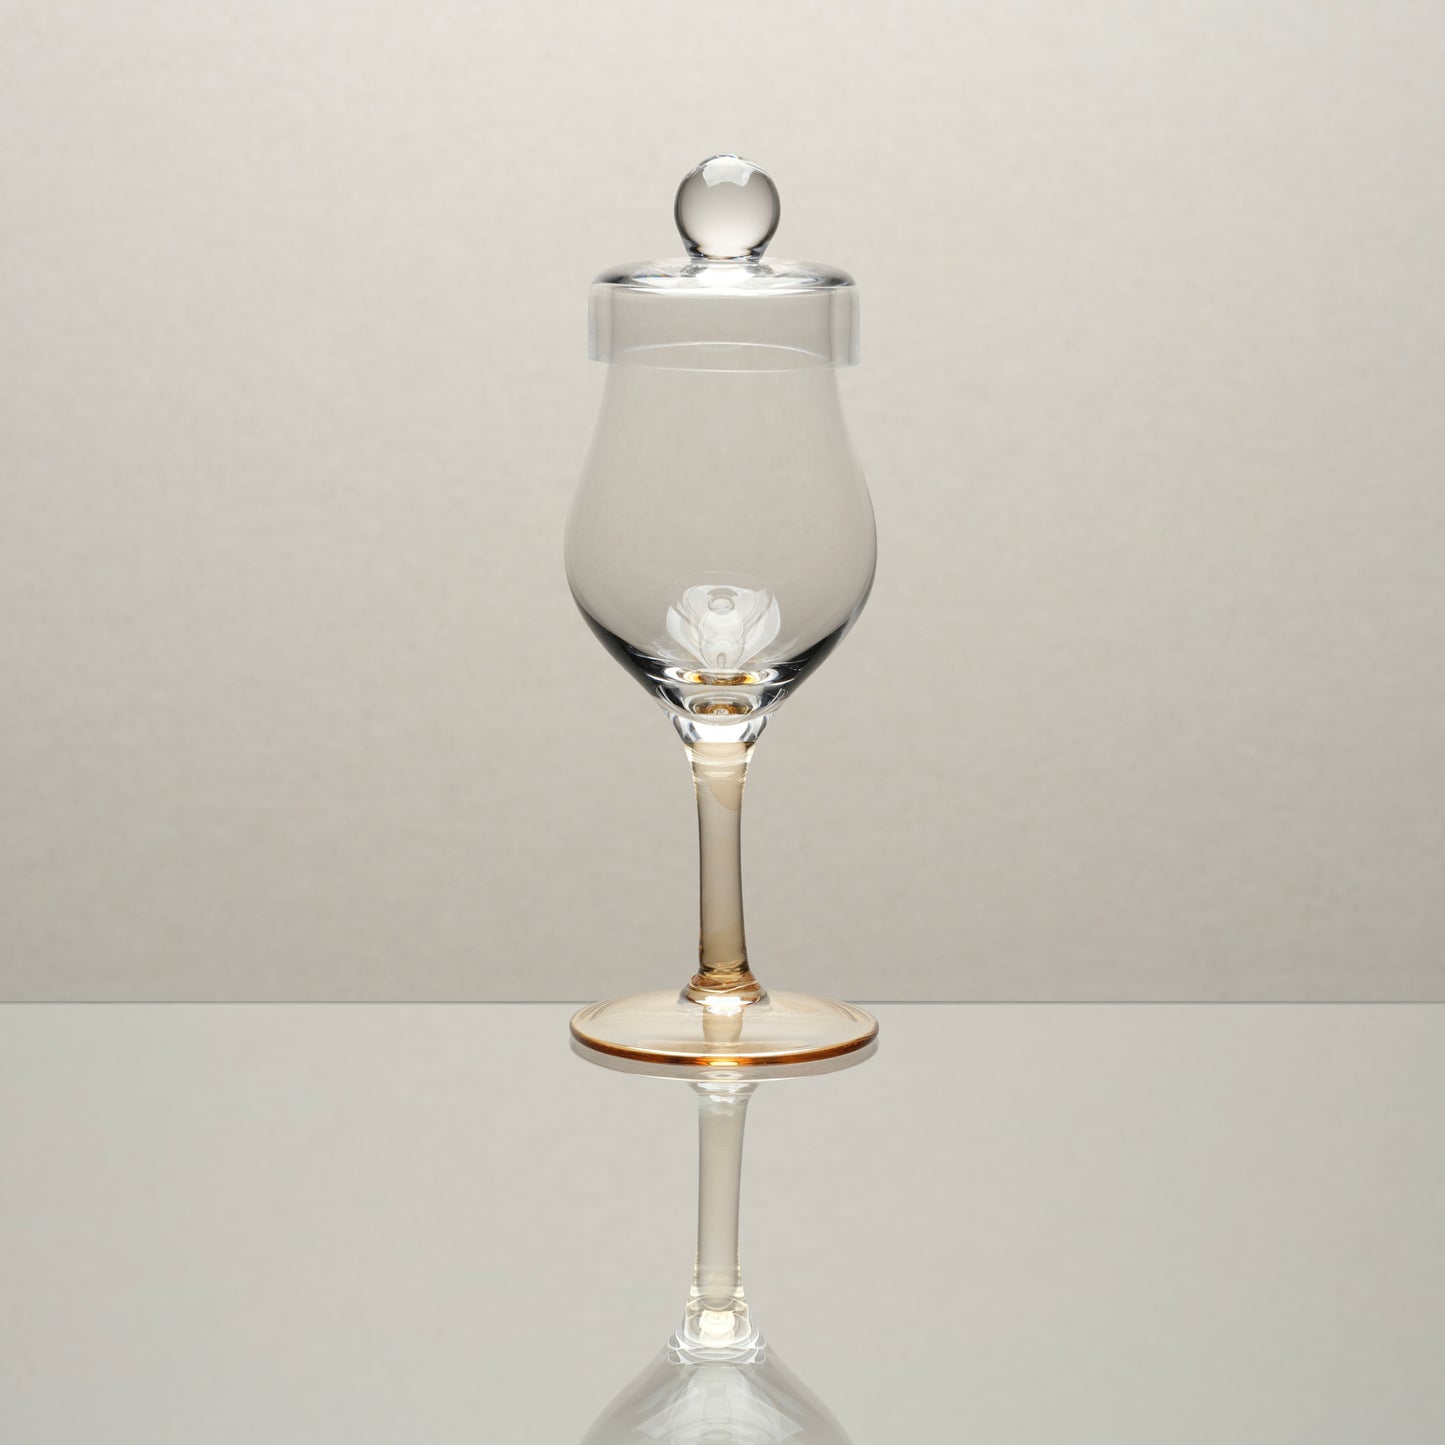 Amber Glass - G100 Whisky Tasting Glass